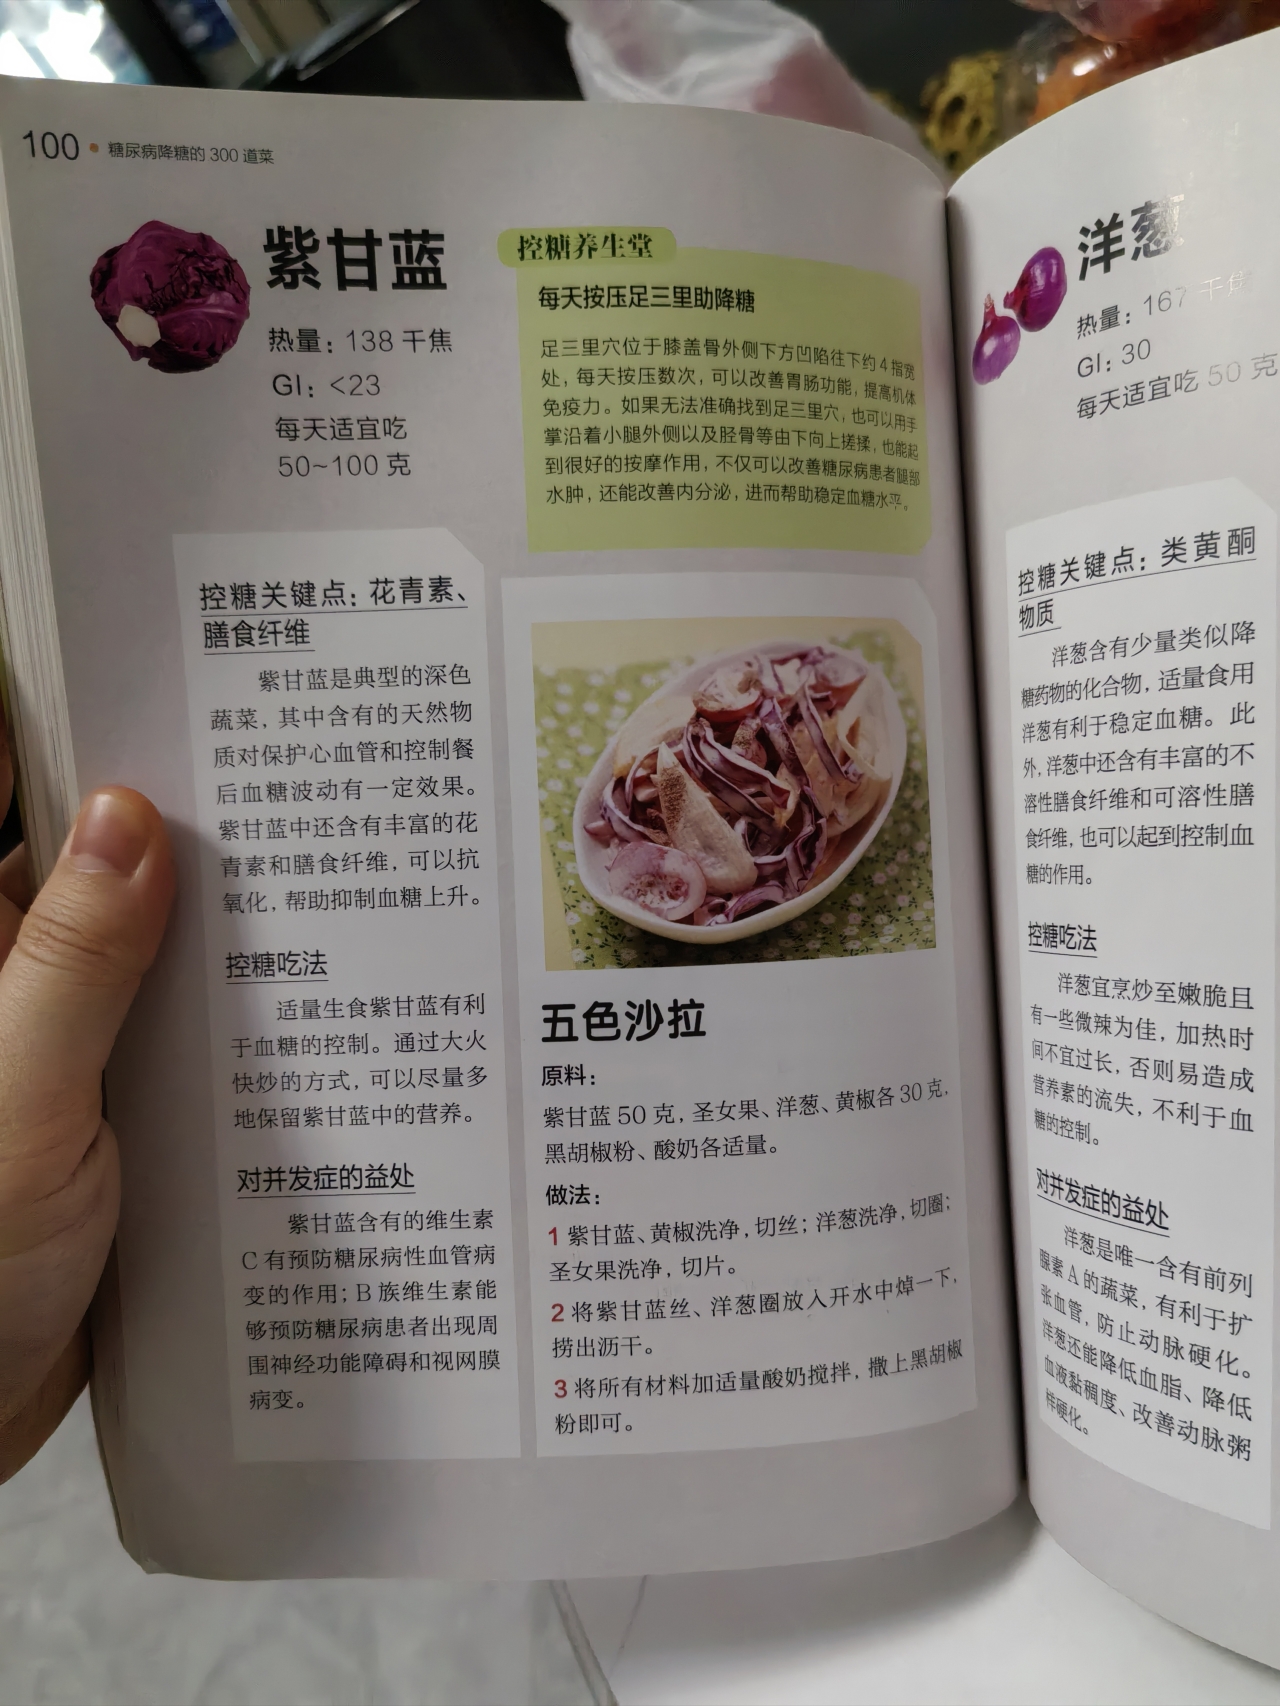 蔬菜及菌菇类: 紫甘蓝